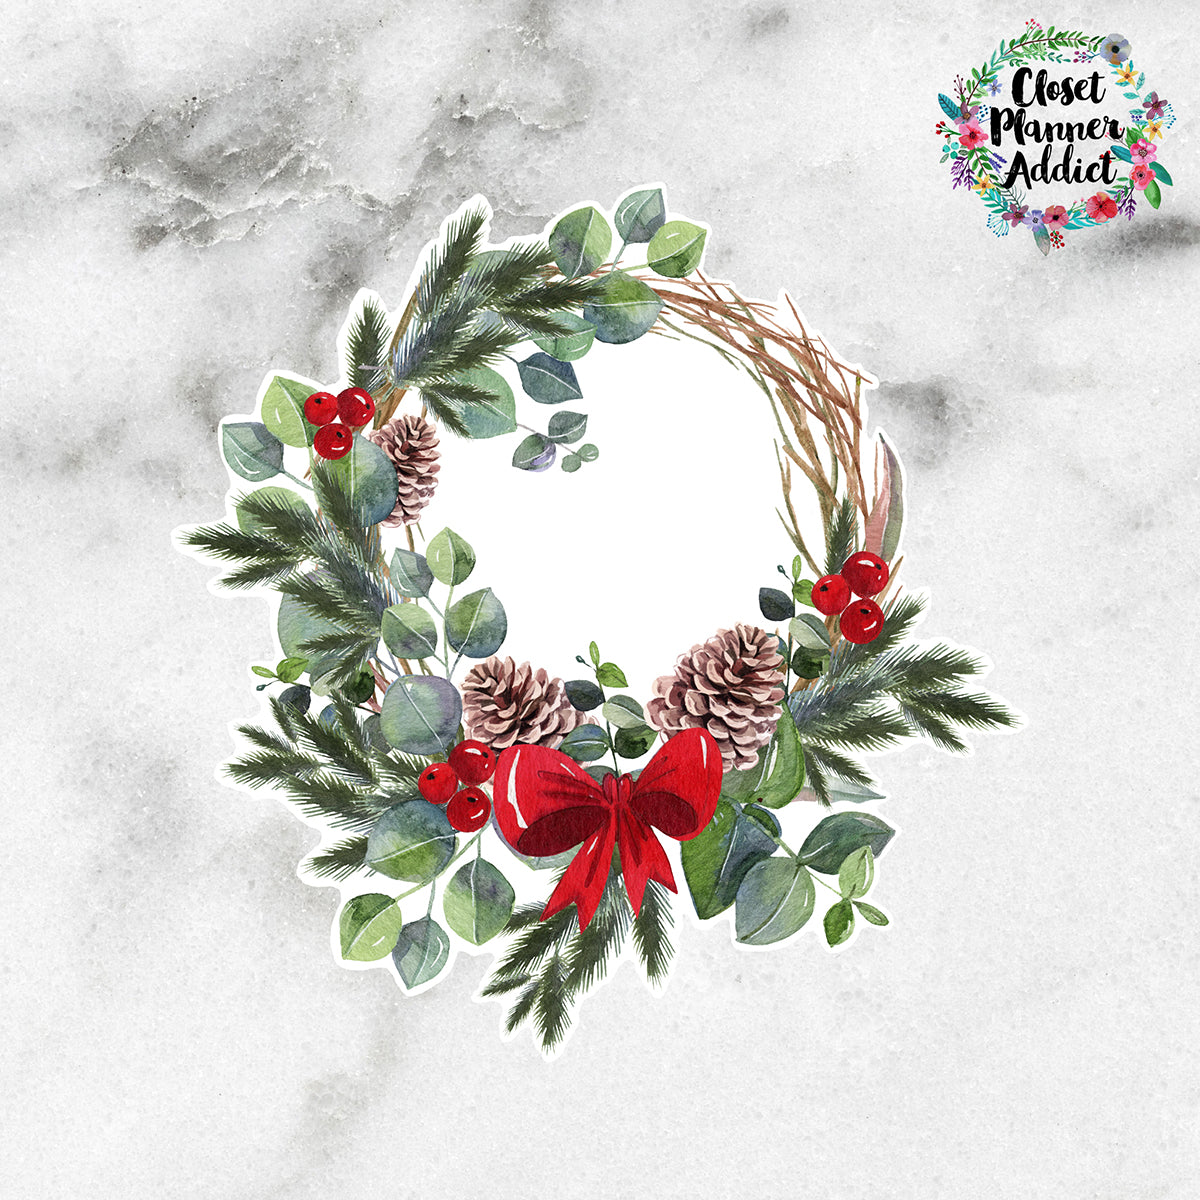 Christmas Wreath Die Cut Sticker by Closet Planner Addict (DC-036)